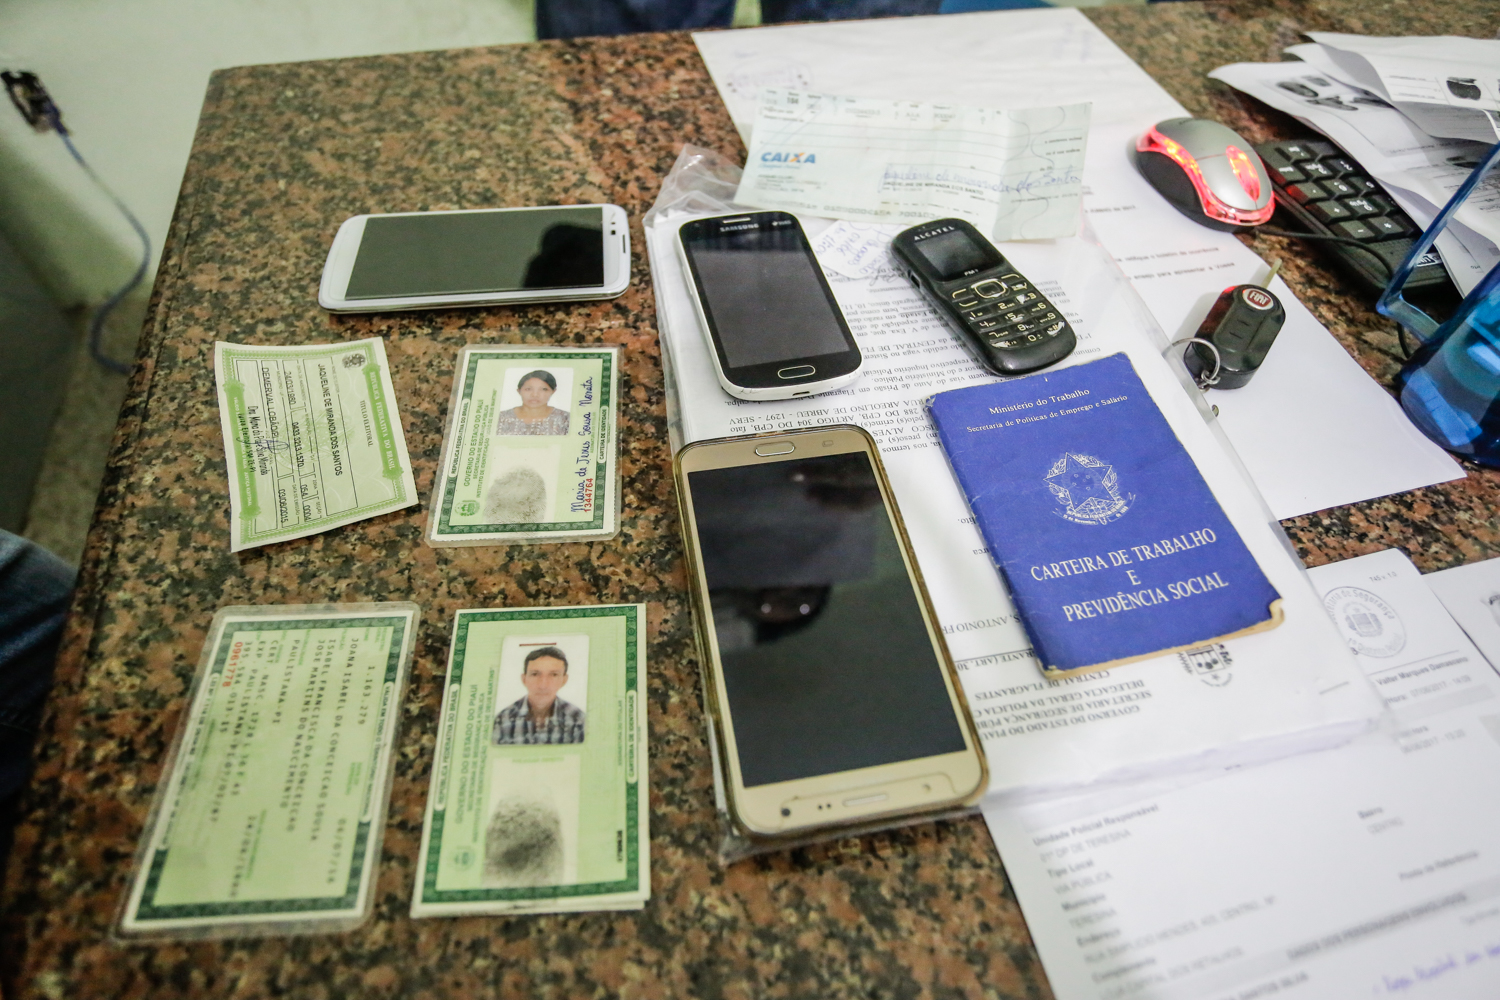 Documentos falsos e celulares apreendidos  